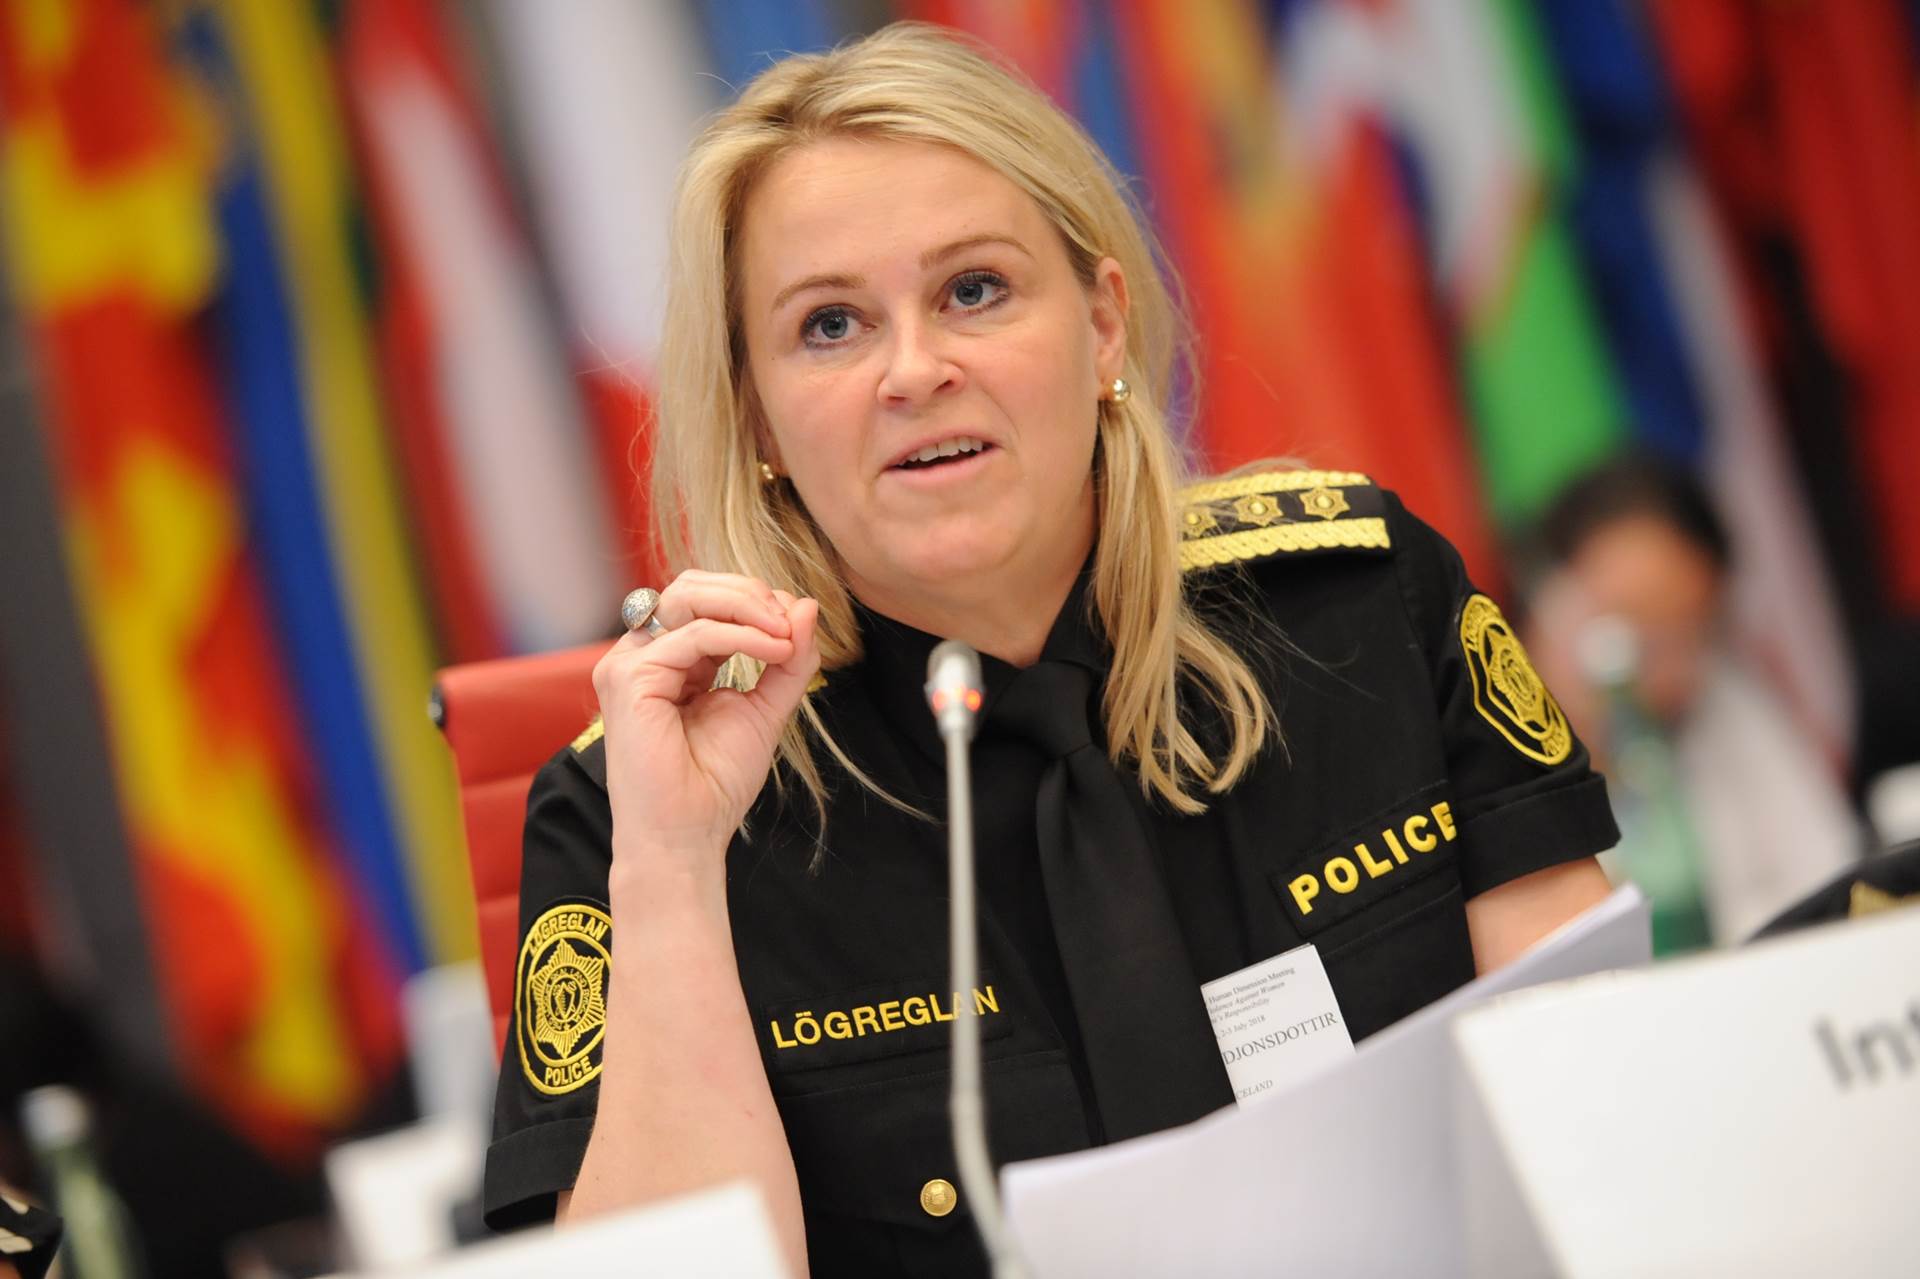 Sigríður Björk Guðjónsdóttir Police Commissioner at the 2nd Supplementary OSCE Human Dimension Meeting in Vienna, 2-3 July 2018. - mynd